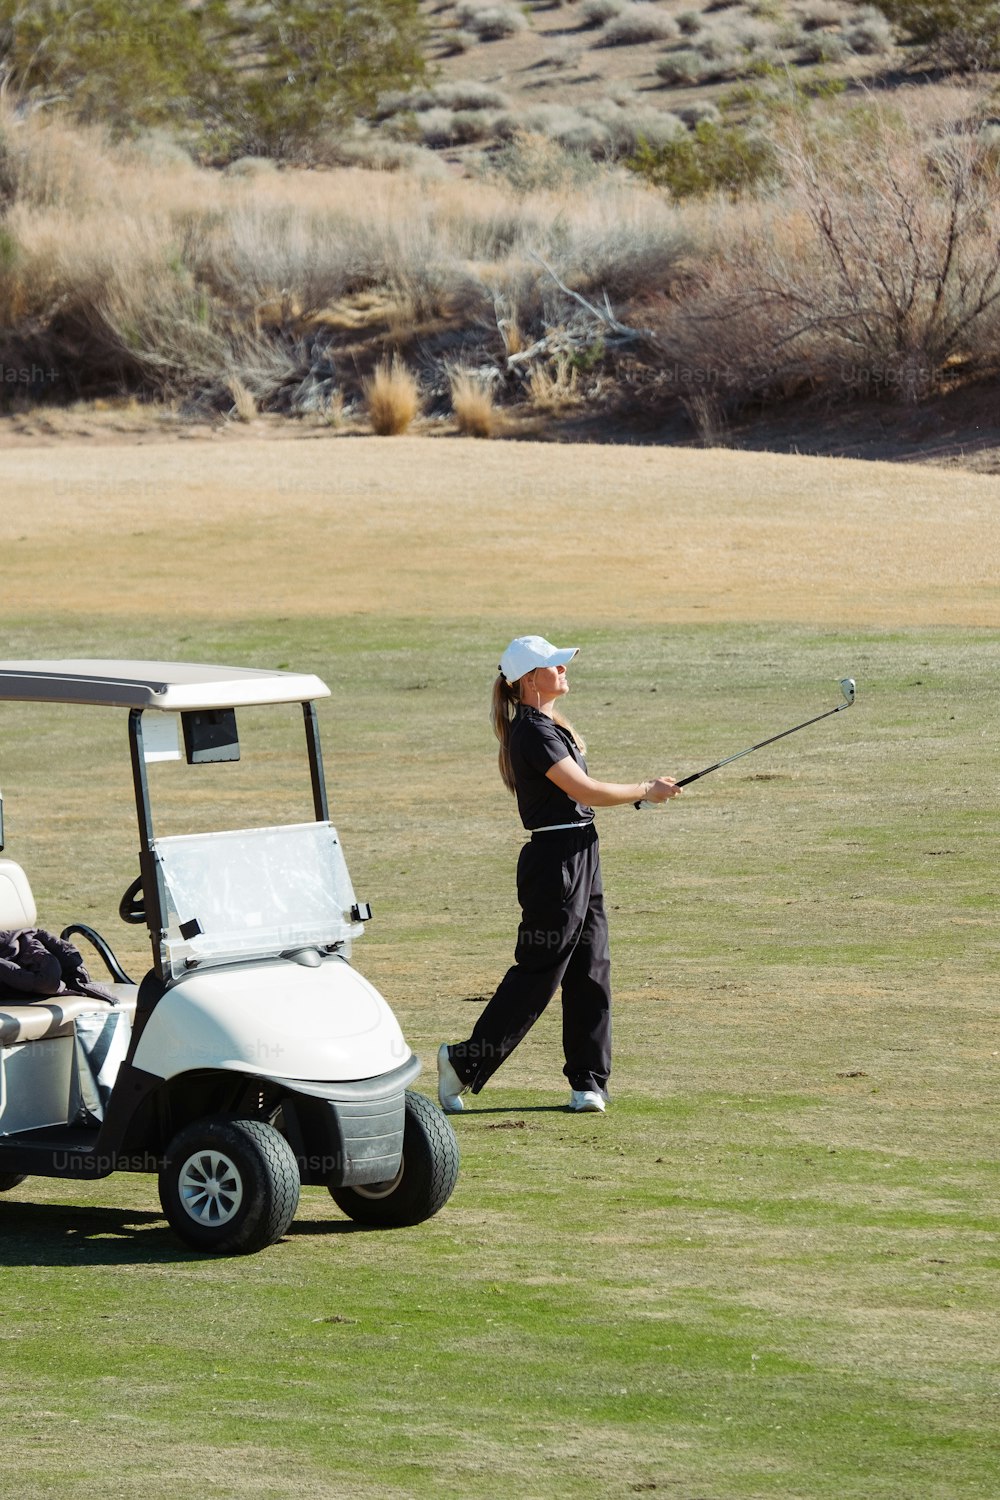 Una mujer jugando al golf en un campo de golf